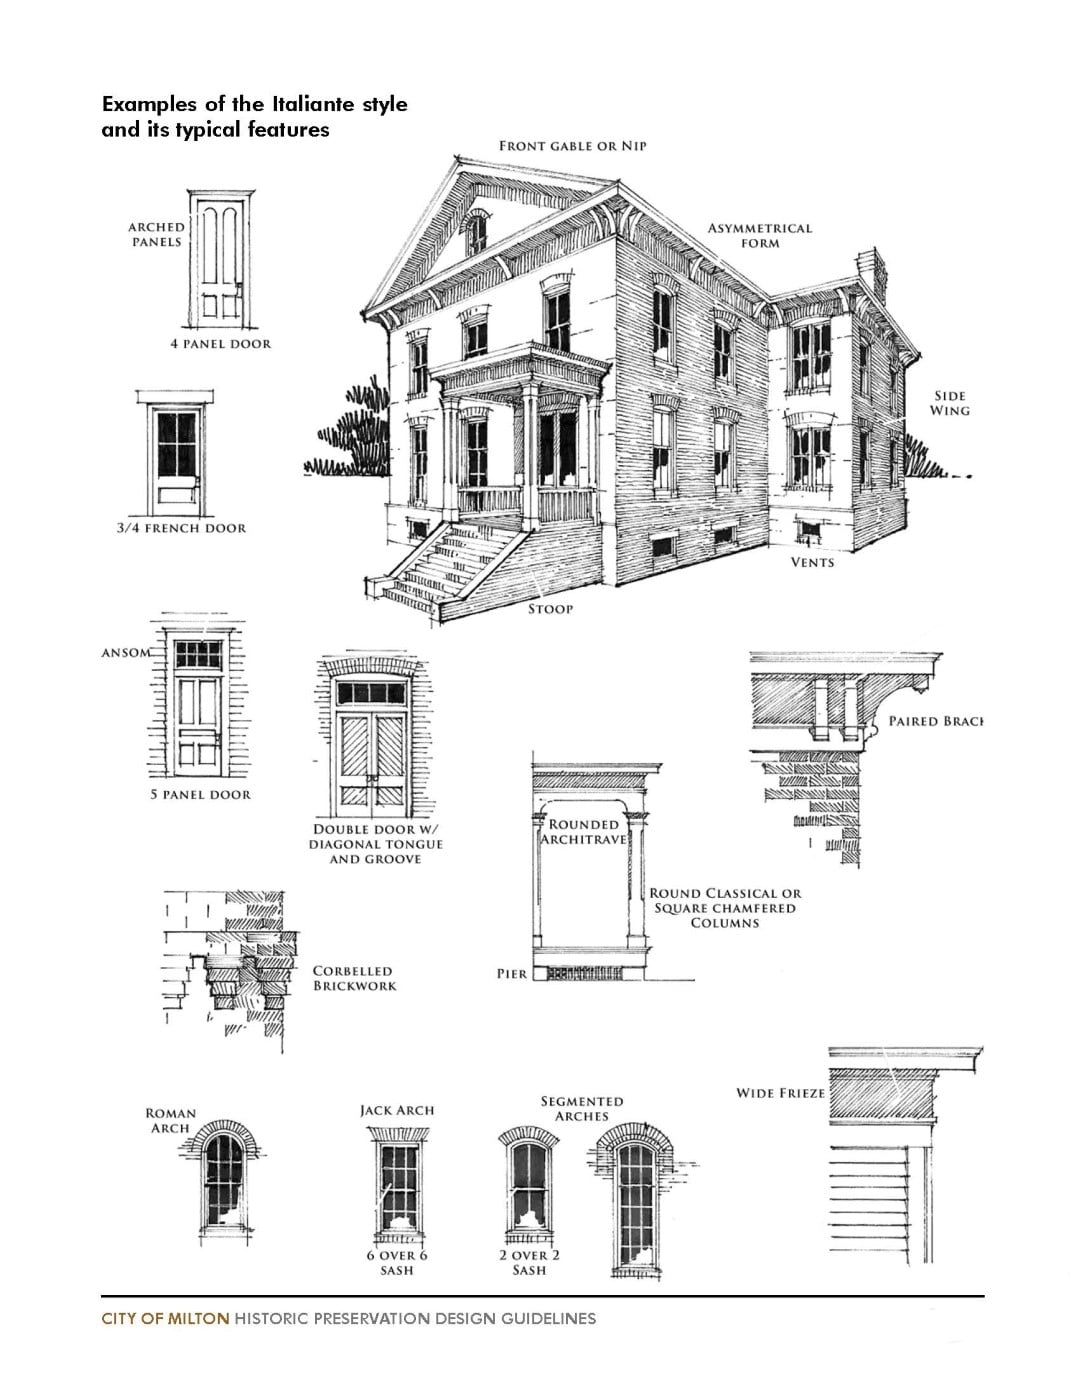 Historic Preservation Design Guidelines